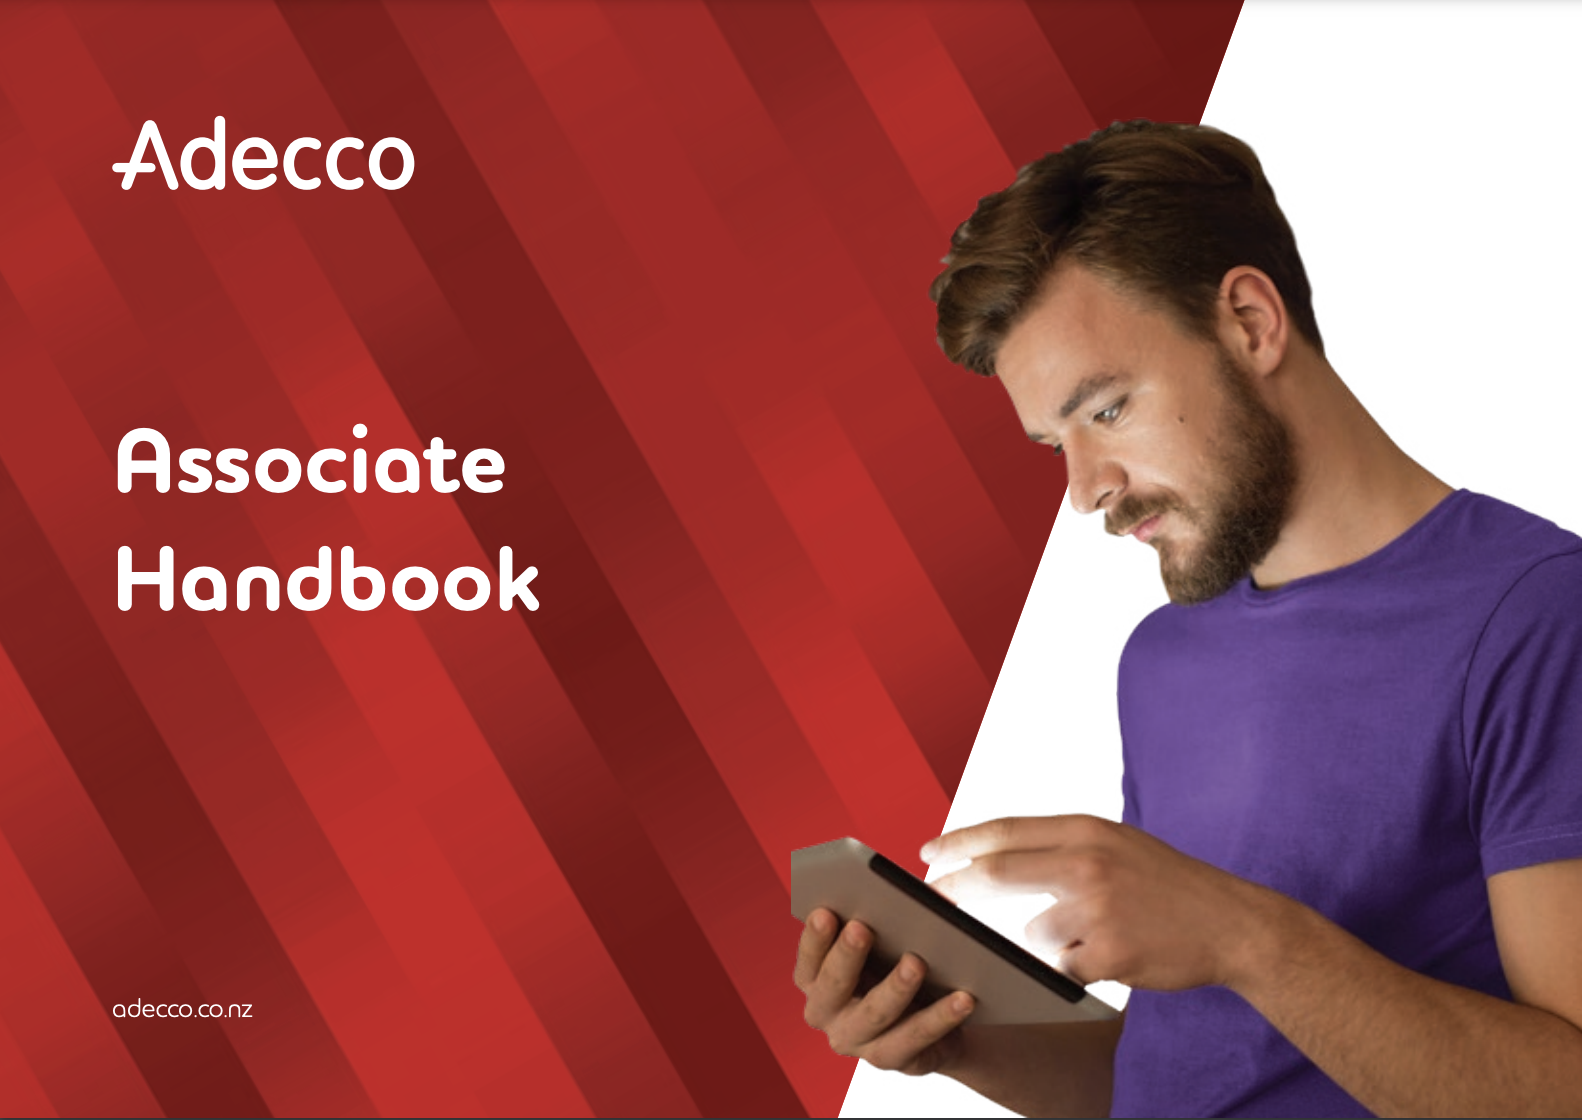 Adecco Associate Handbook